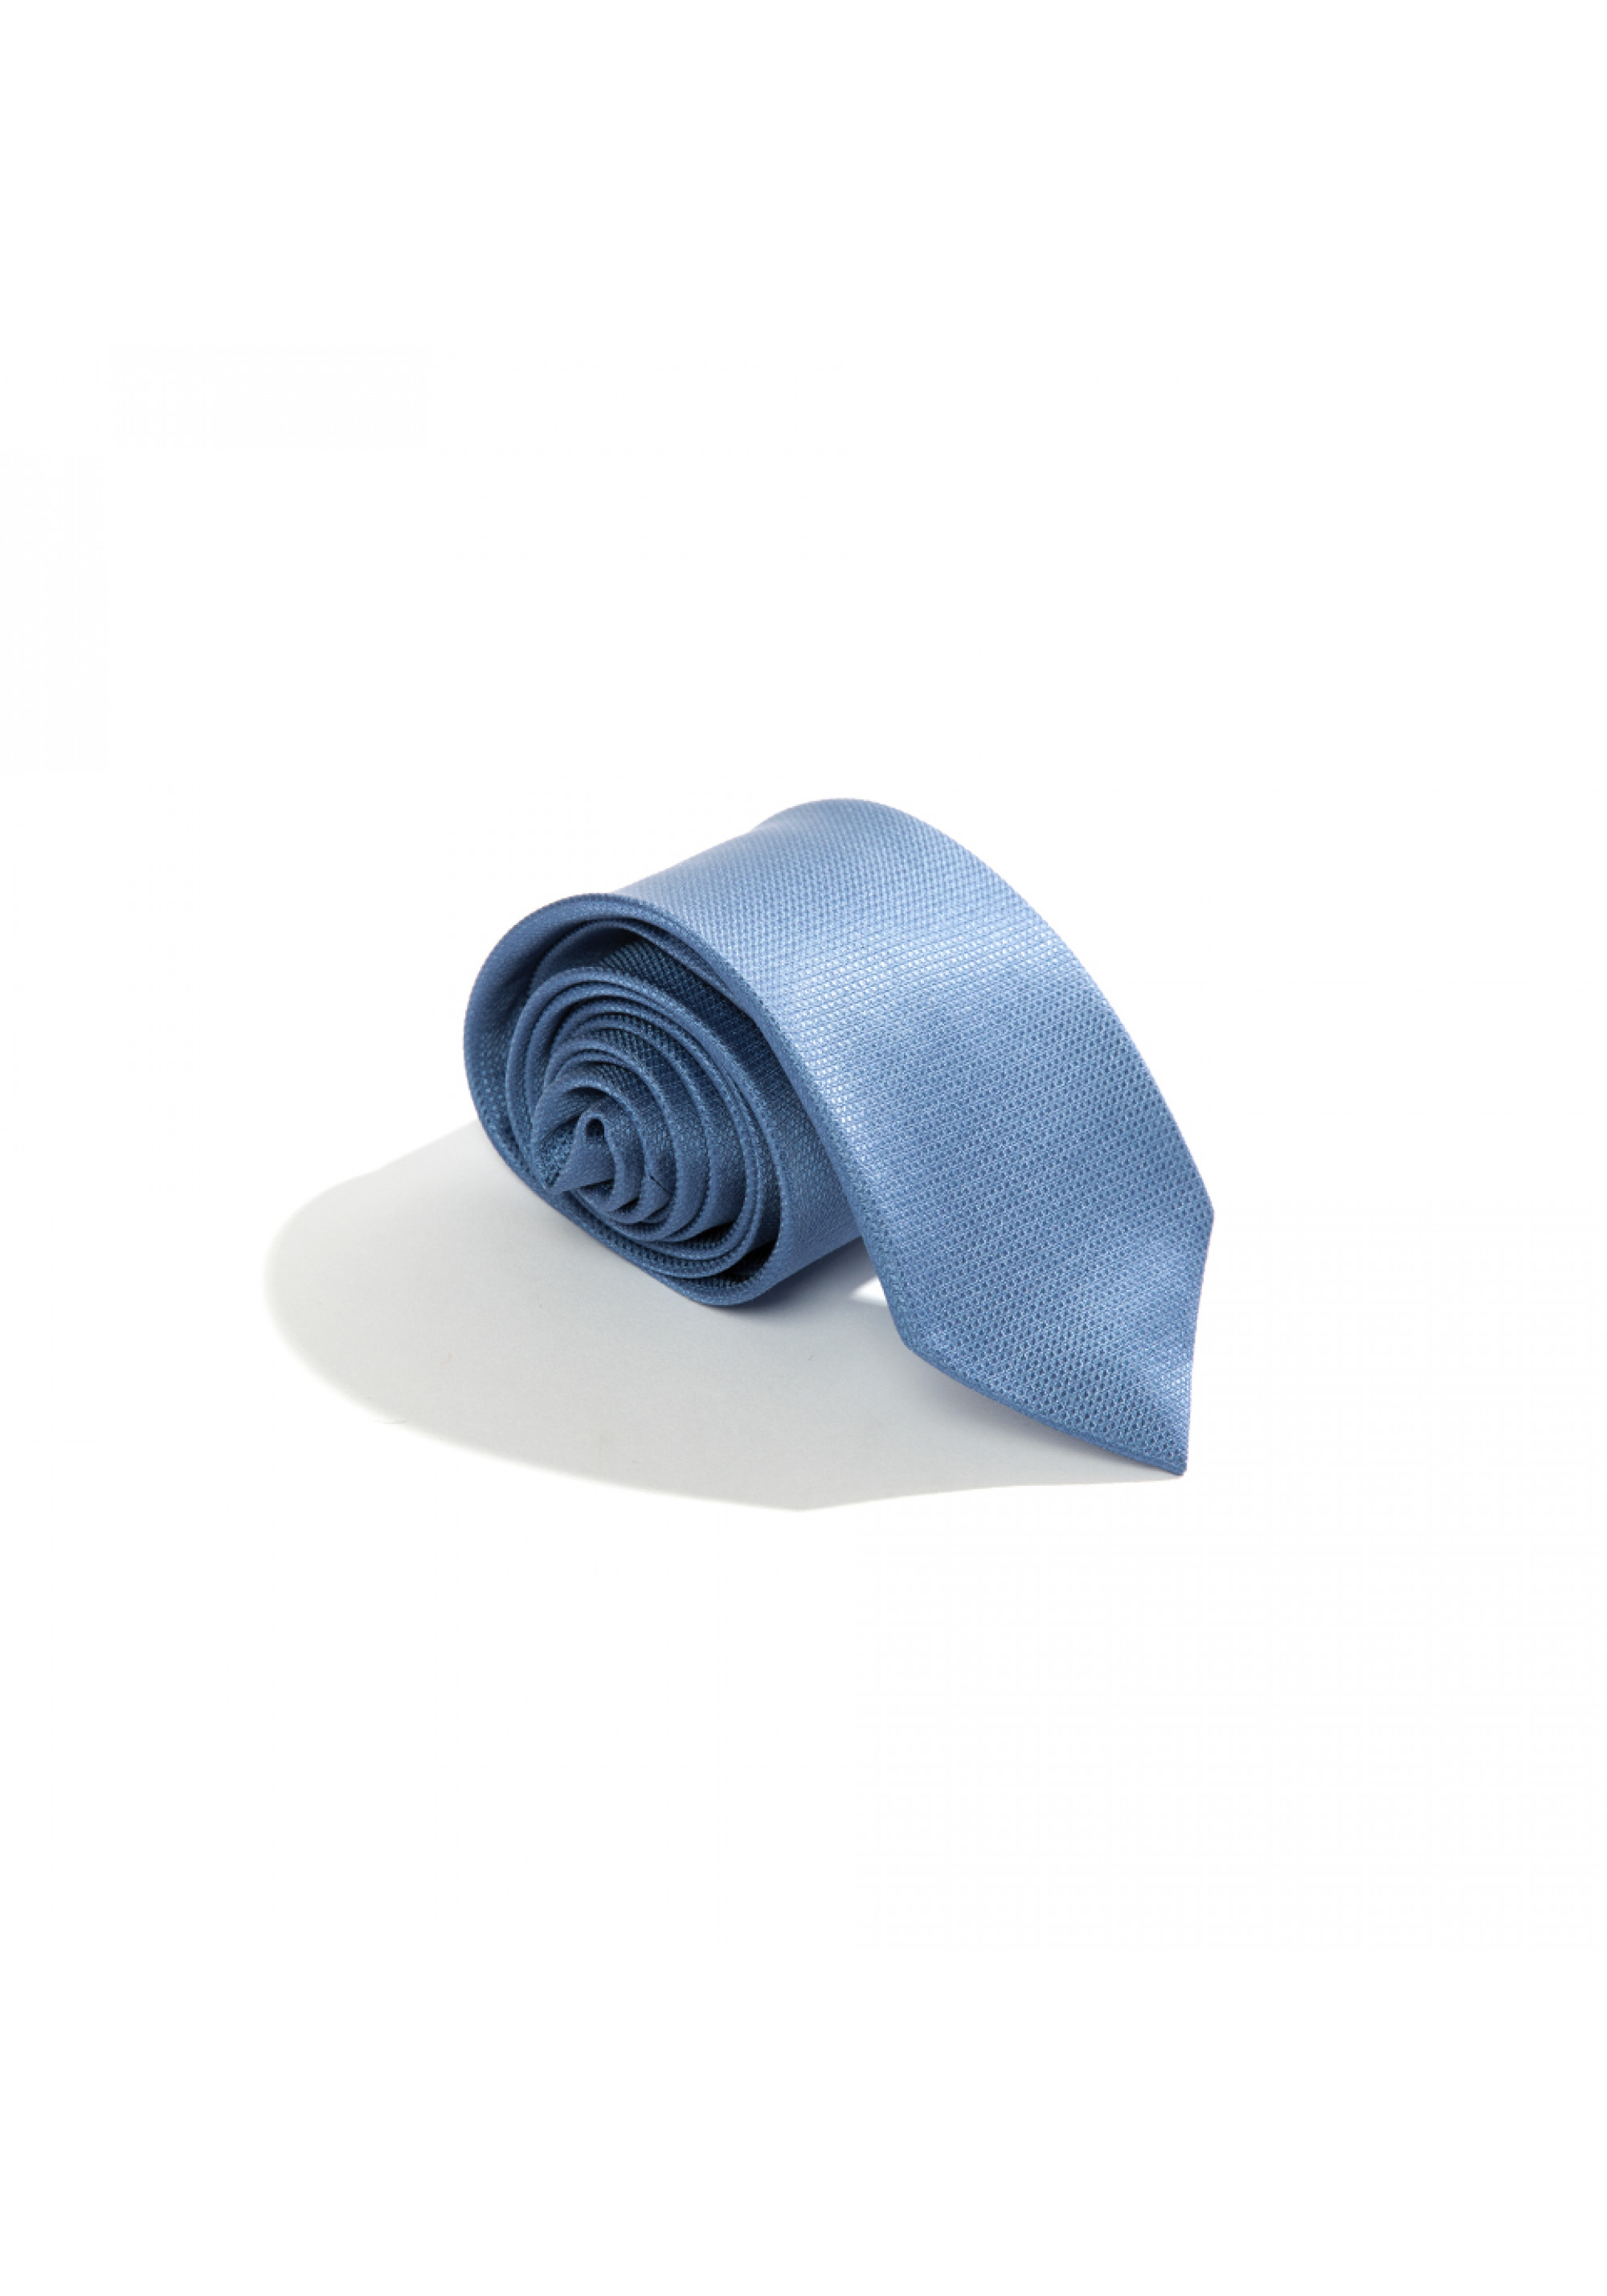 Cravata Albastra Blues 